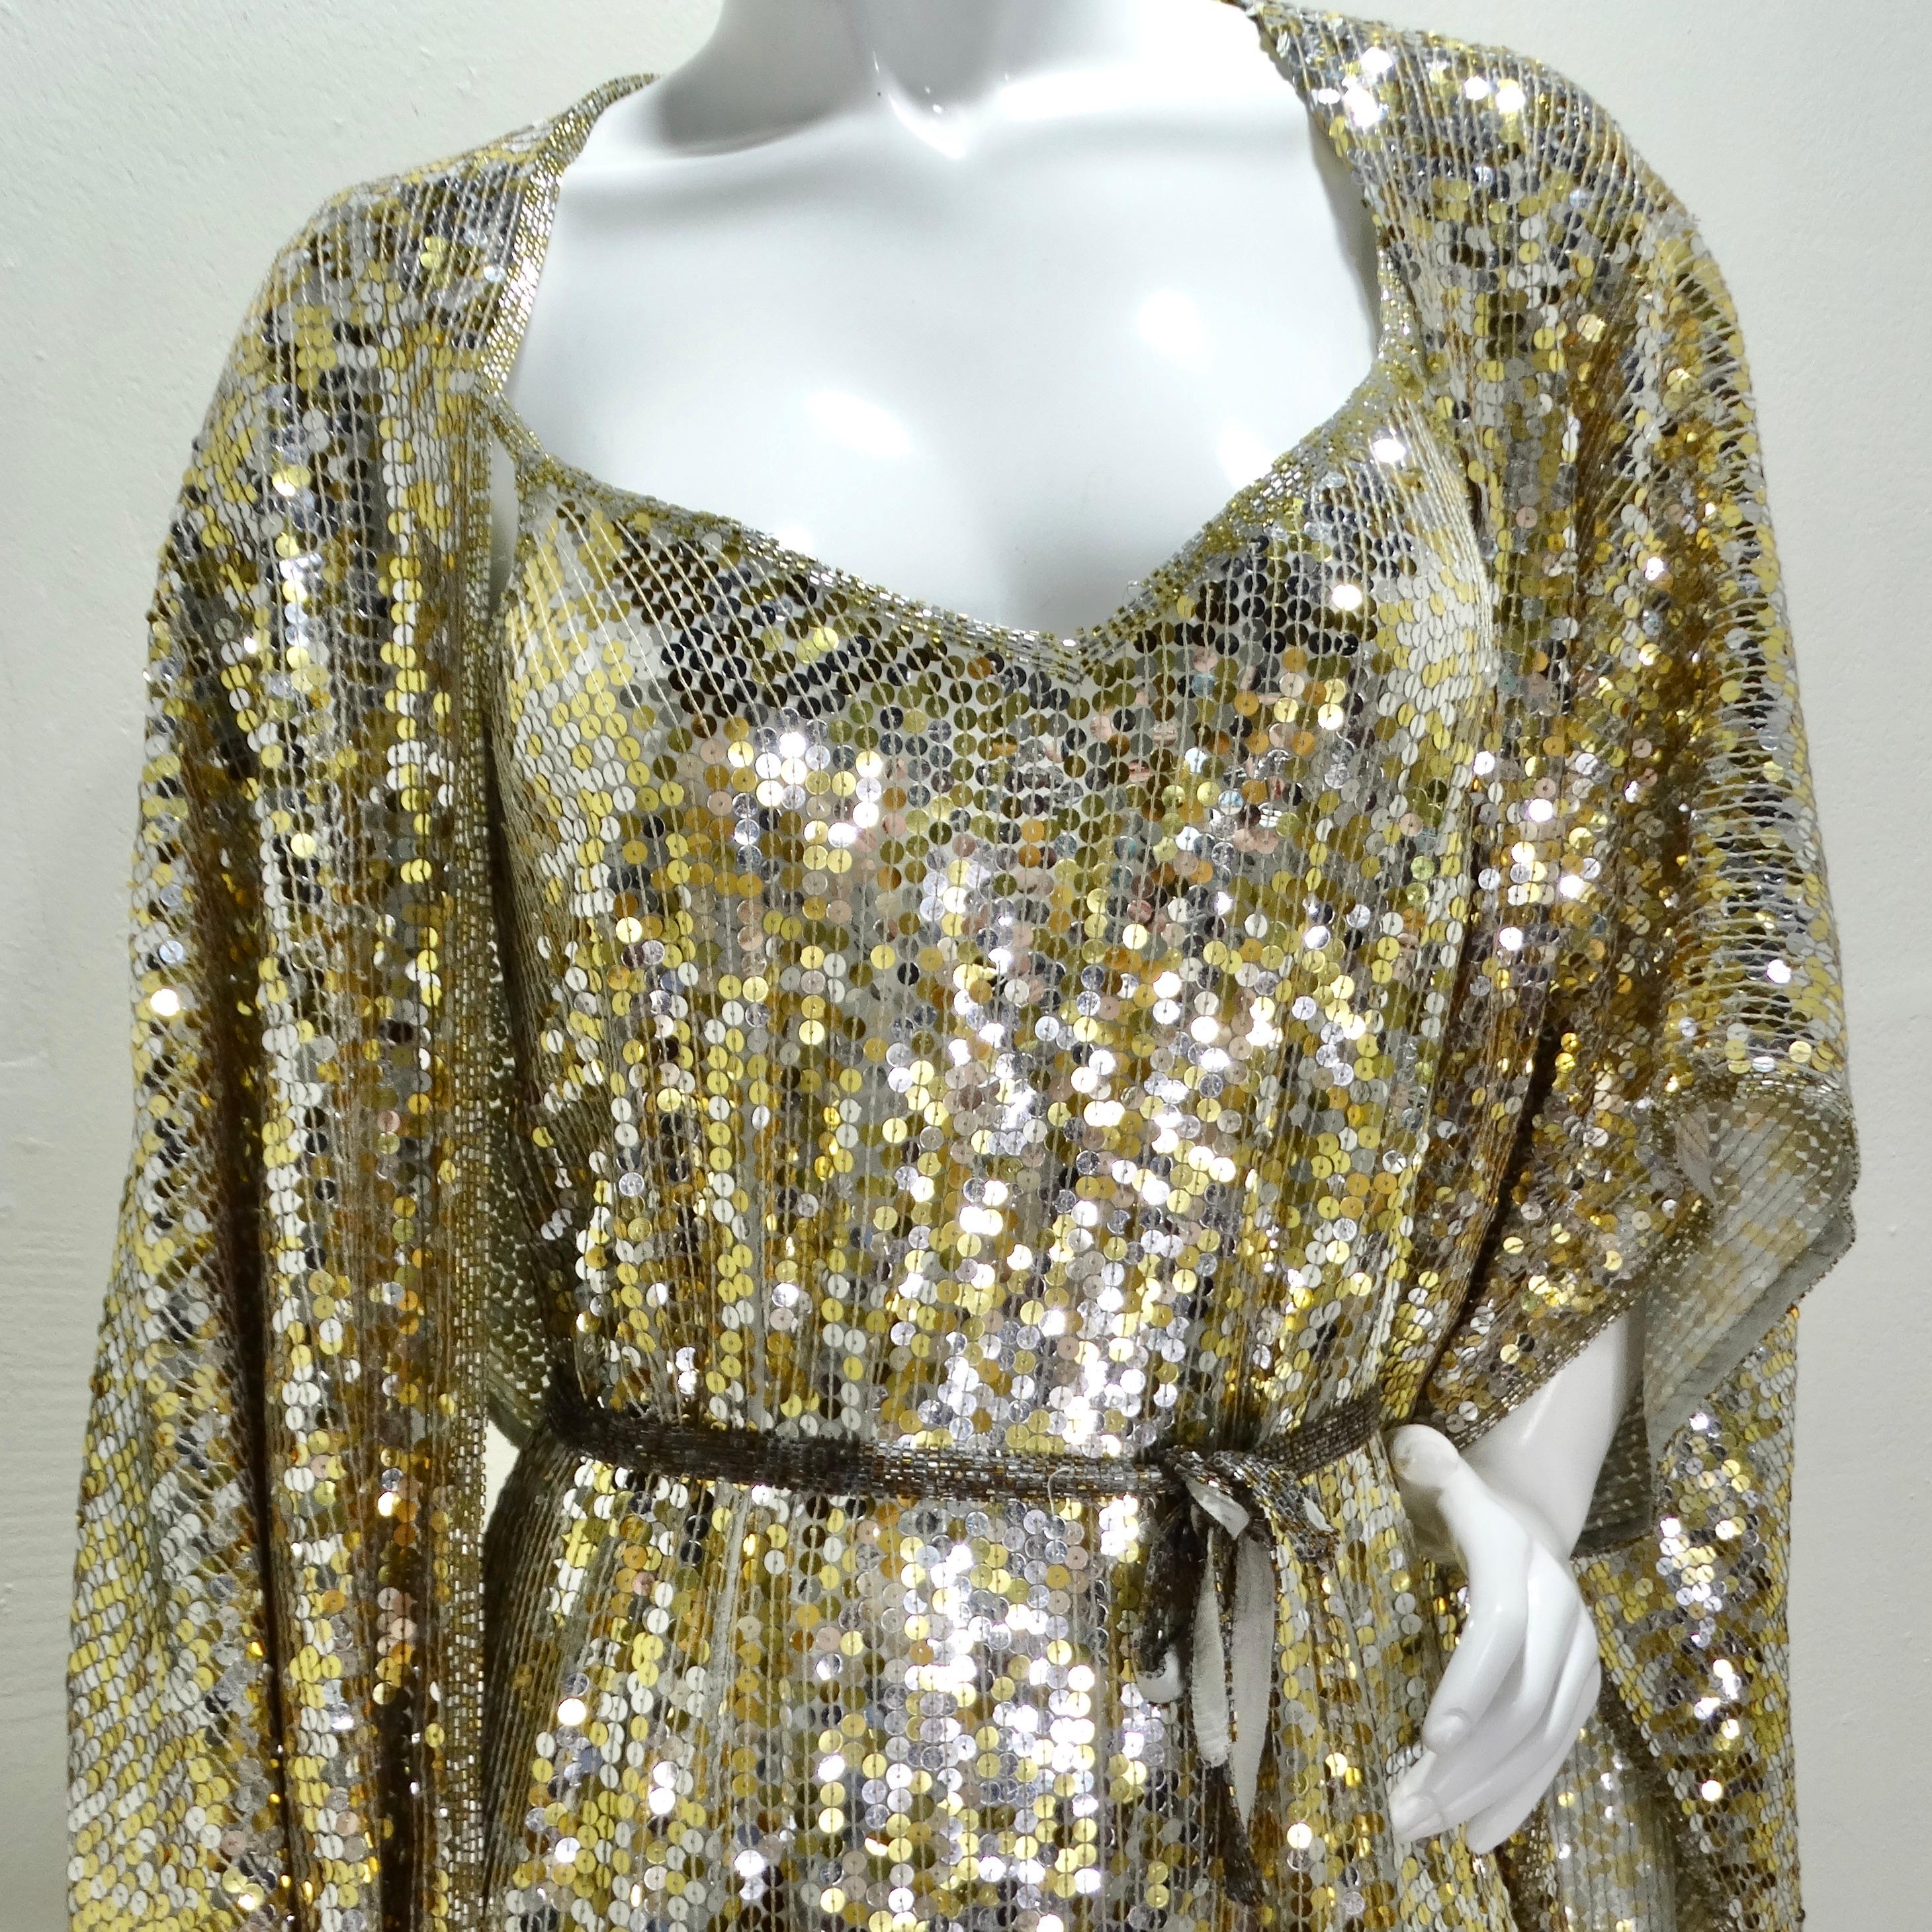 Glamouröser Auftritt mit dem 1980er Capriccio Set aus Kleid, Schal und Gürtel mit Paillettenverzierung in Gold! Das Capriccio Gold Sequin Embellished Dress, Shawl & Belt Set ist ein aufsehenerregendes dreiteiliges Ensemble aus den 1980er Jahren. Das